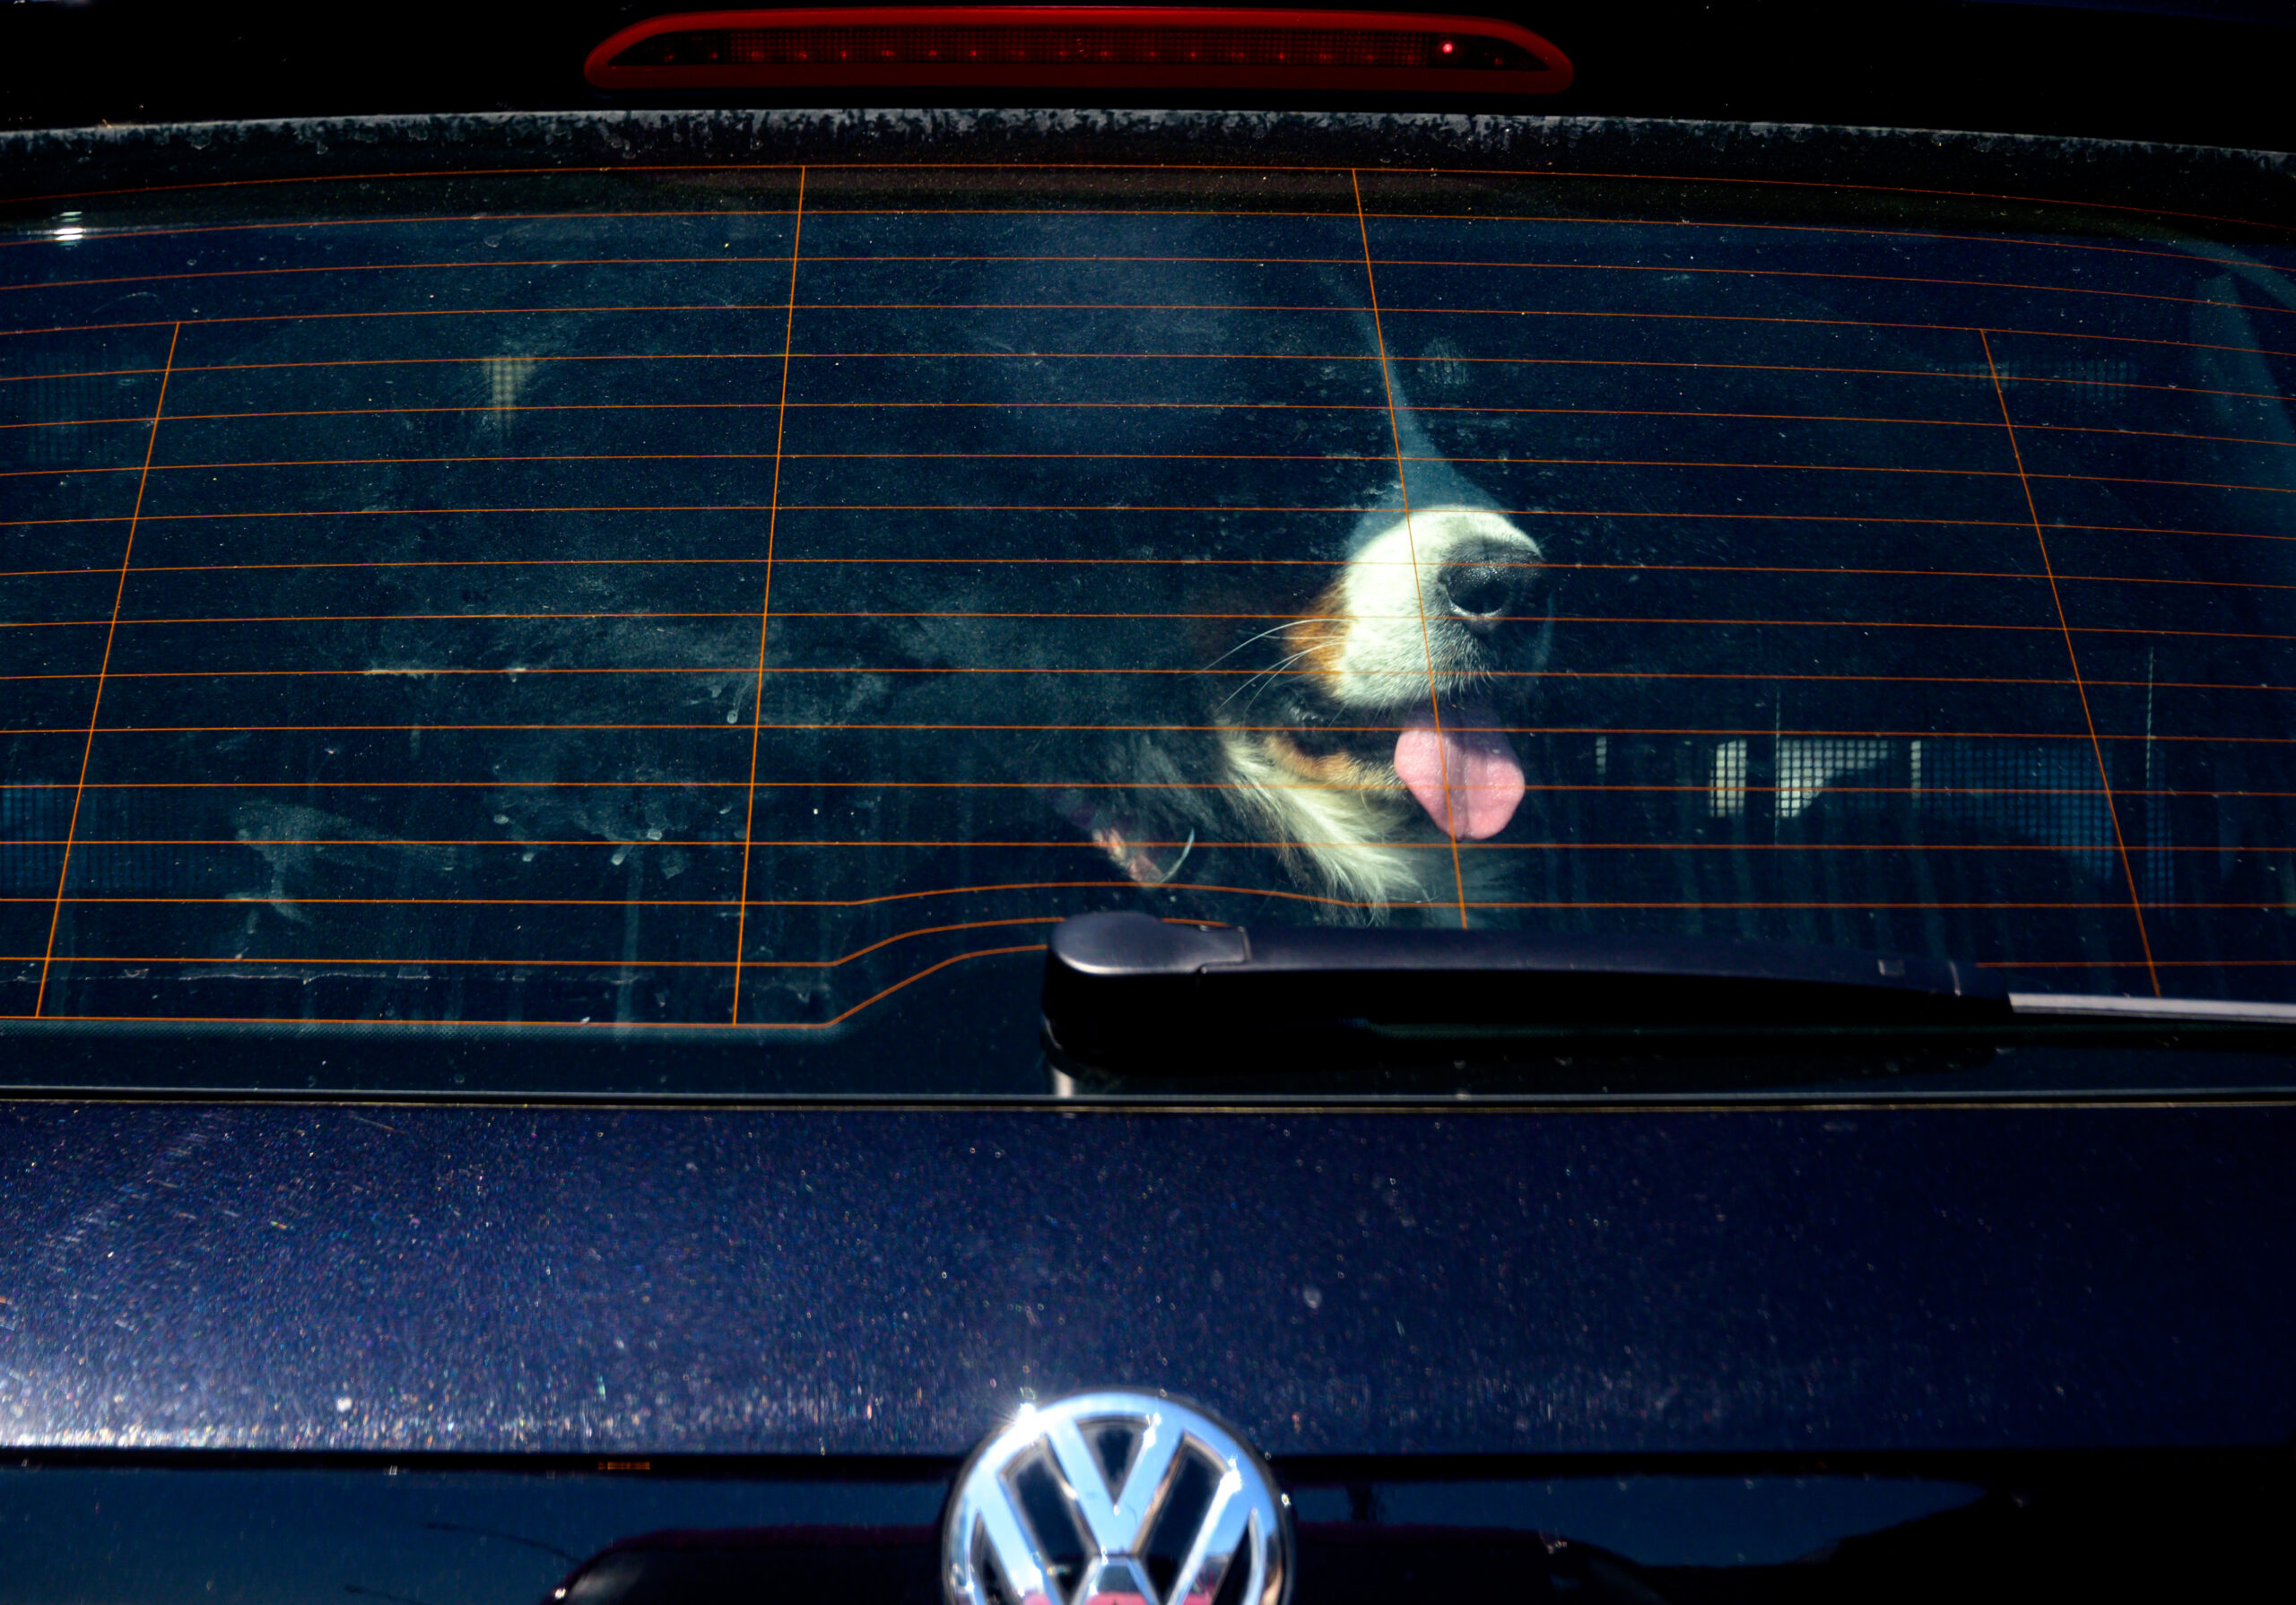 Ein Berner Sennenhund hechelt bei strahlendem Sonnenschein in einem geparkten Auto.